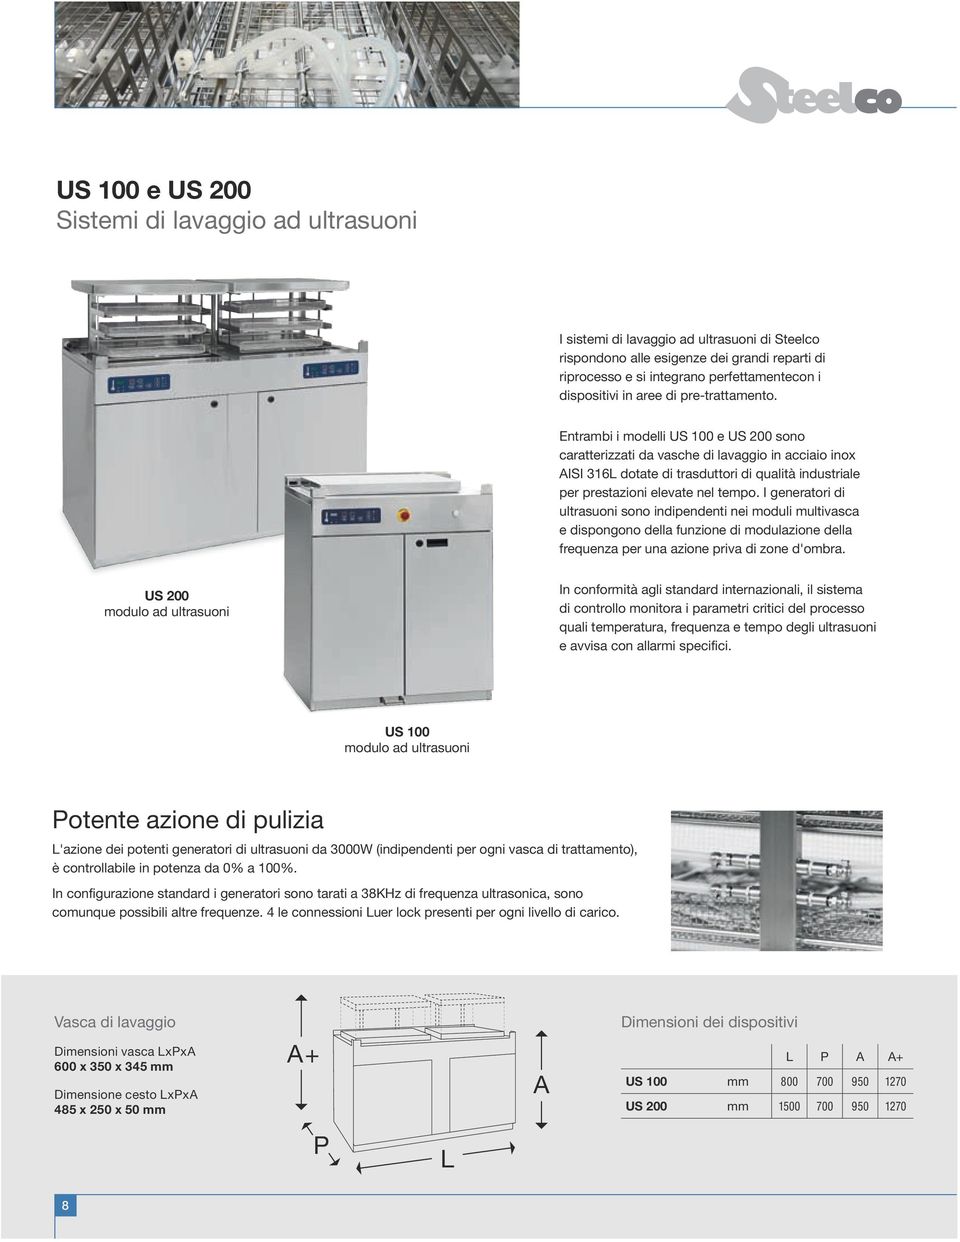 Entrambi i modelli US 100 e US 200 sono caratterizzati da vasche di lavaggio in acciaio inox AISI 316L dotate di trasduttori di qualità industriale per prestazioni elevate nel tempo.